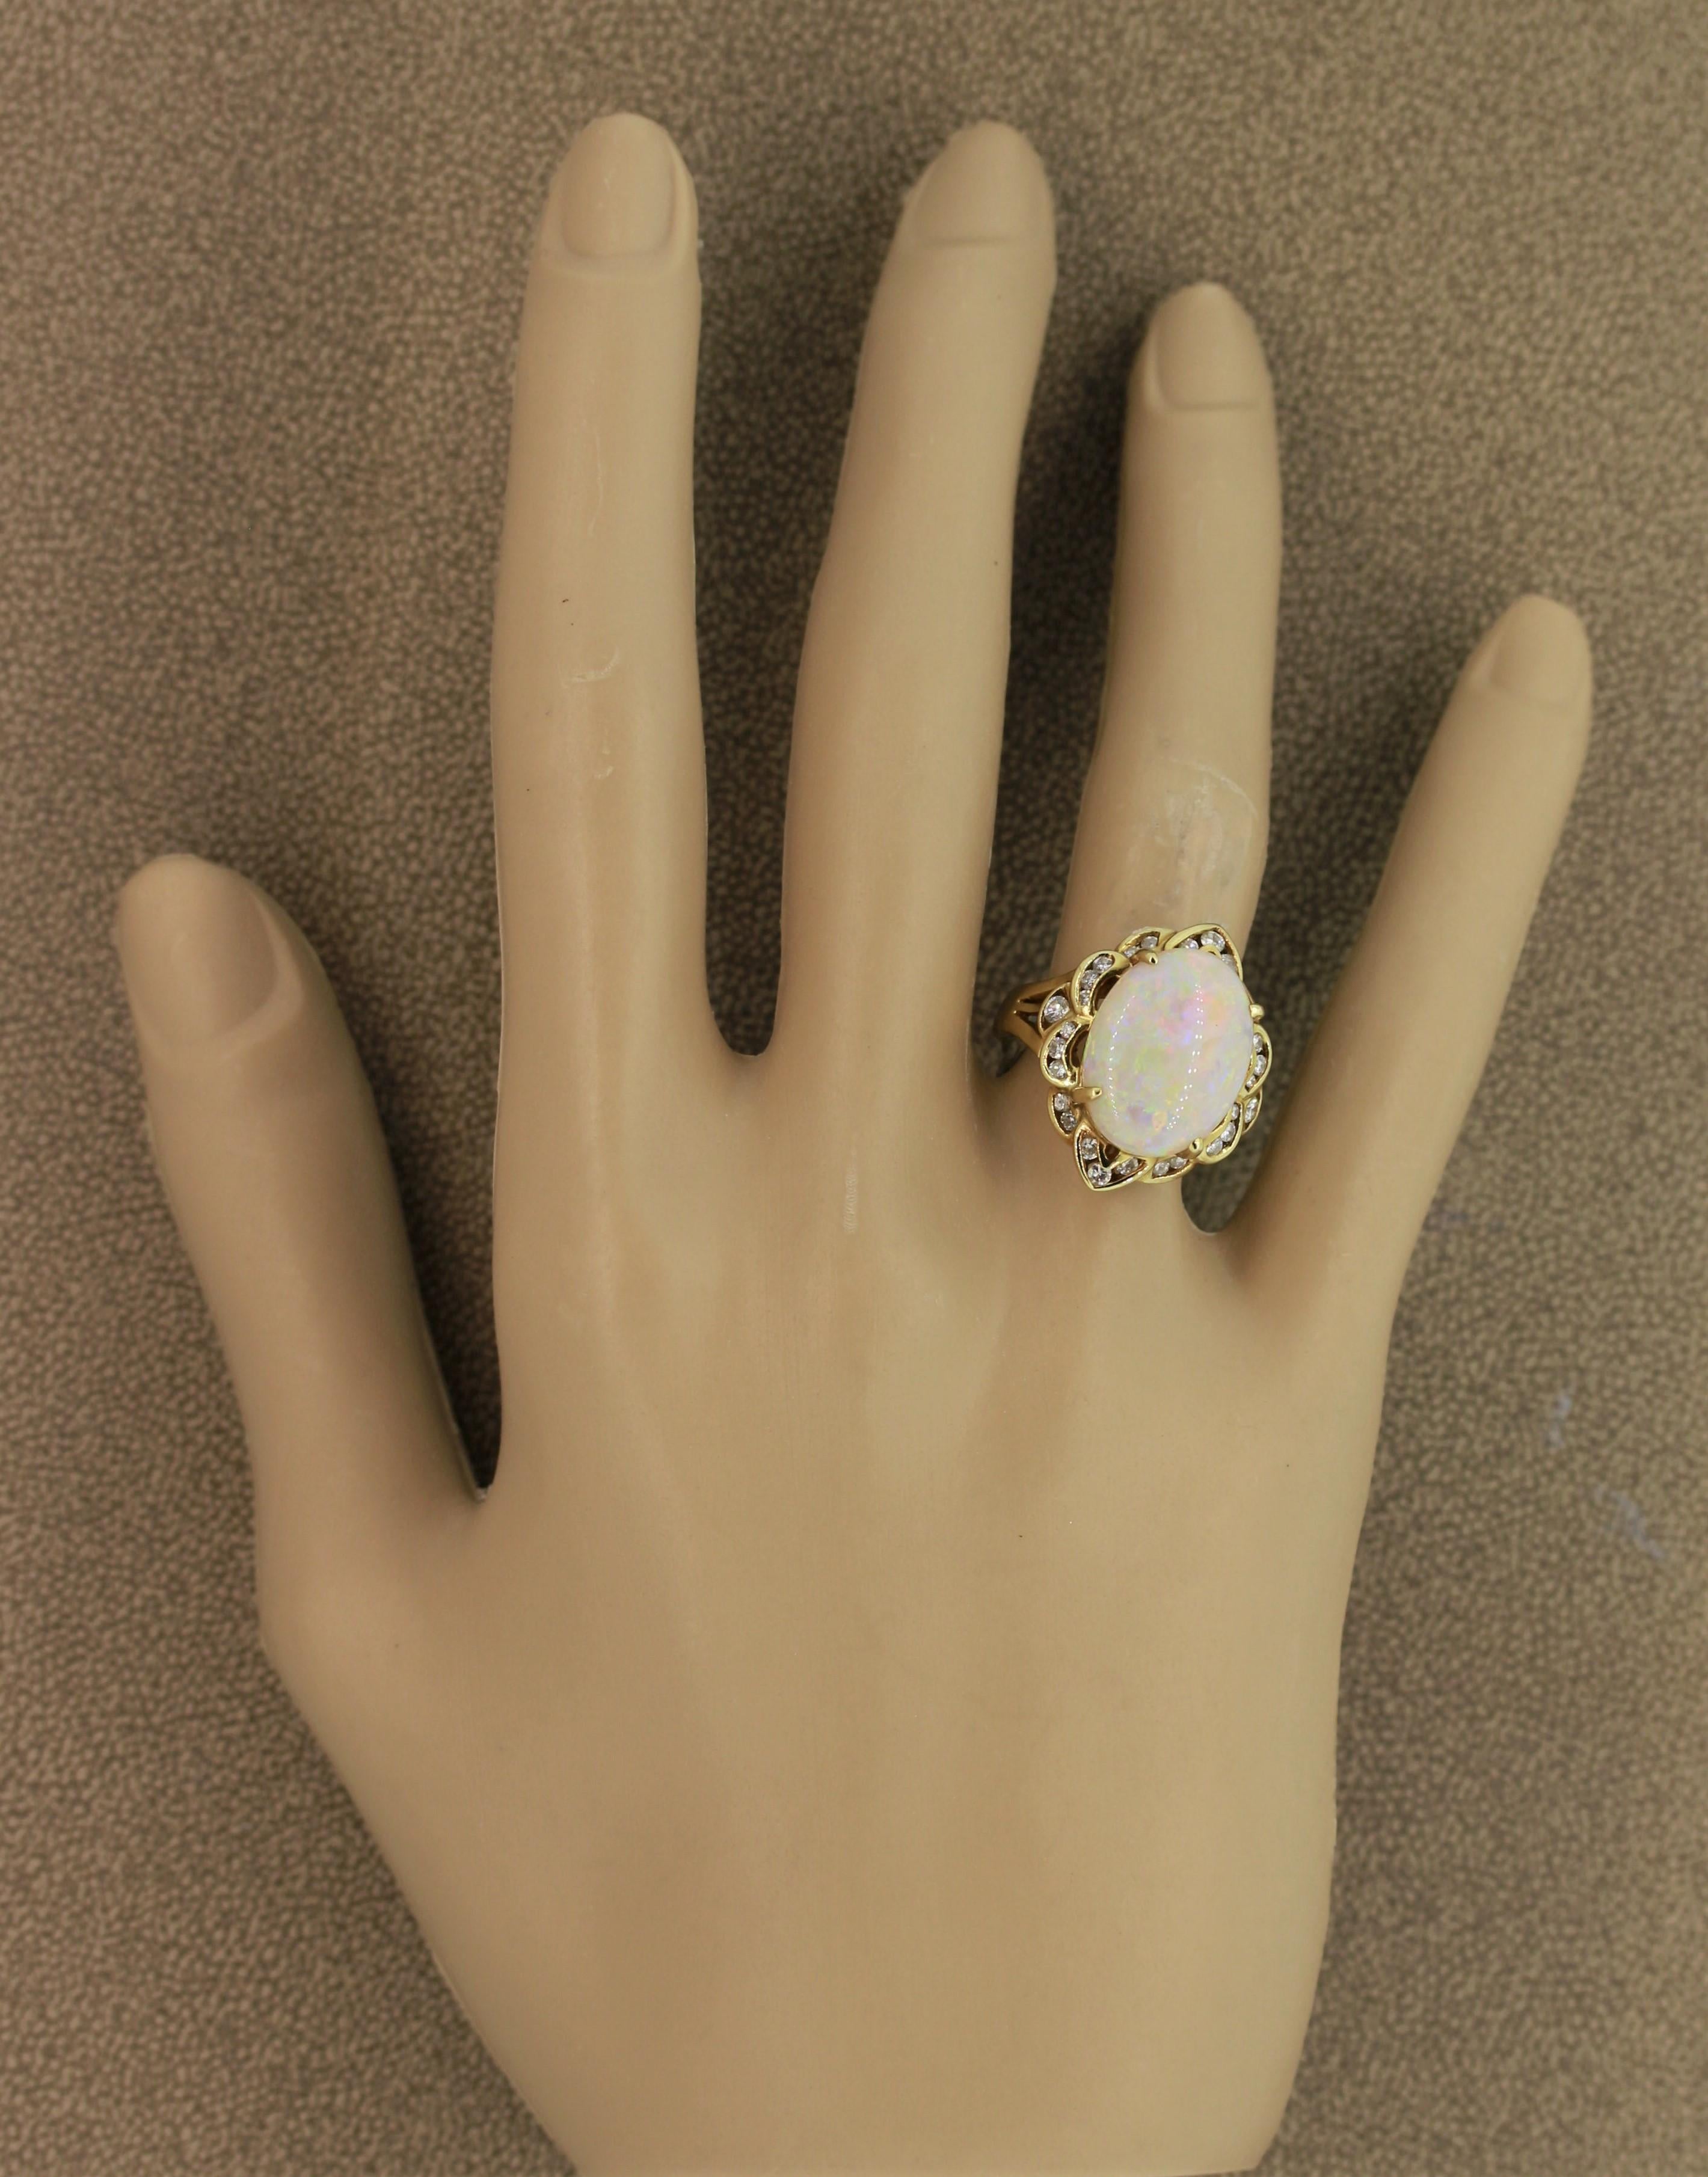 Australian White Opal Diamond Gold Ring For Sale 1